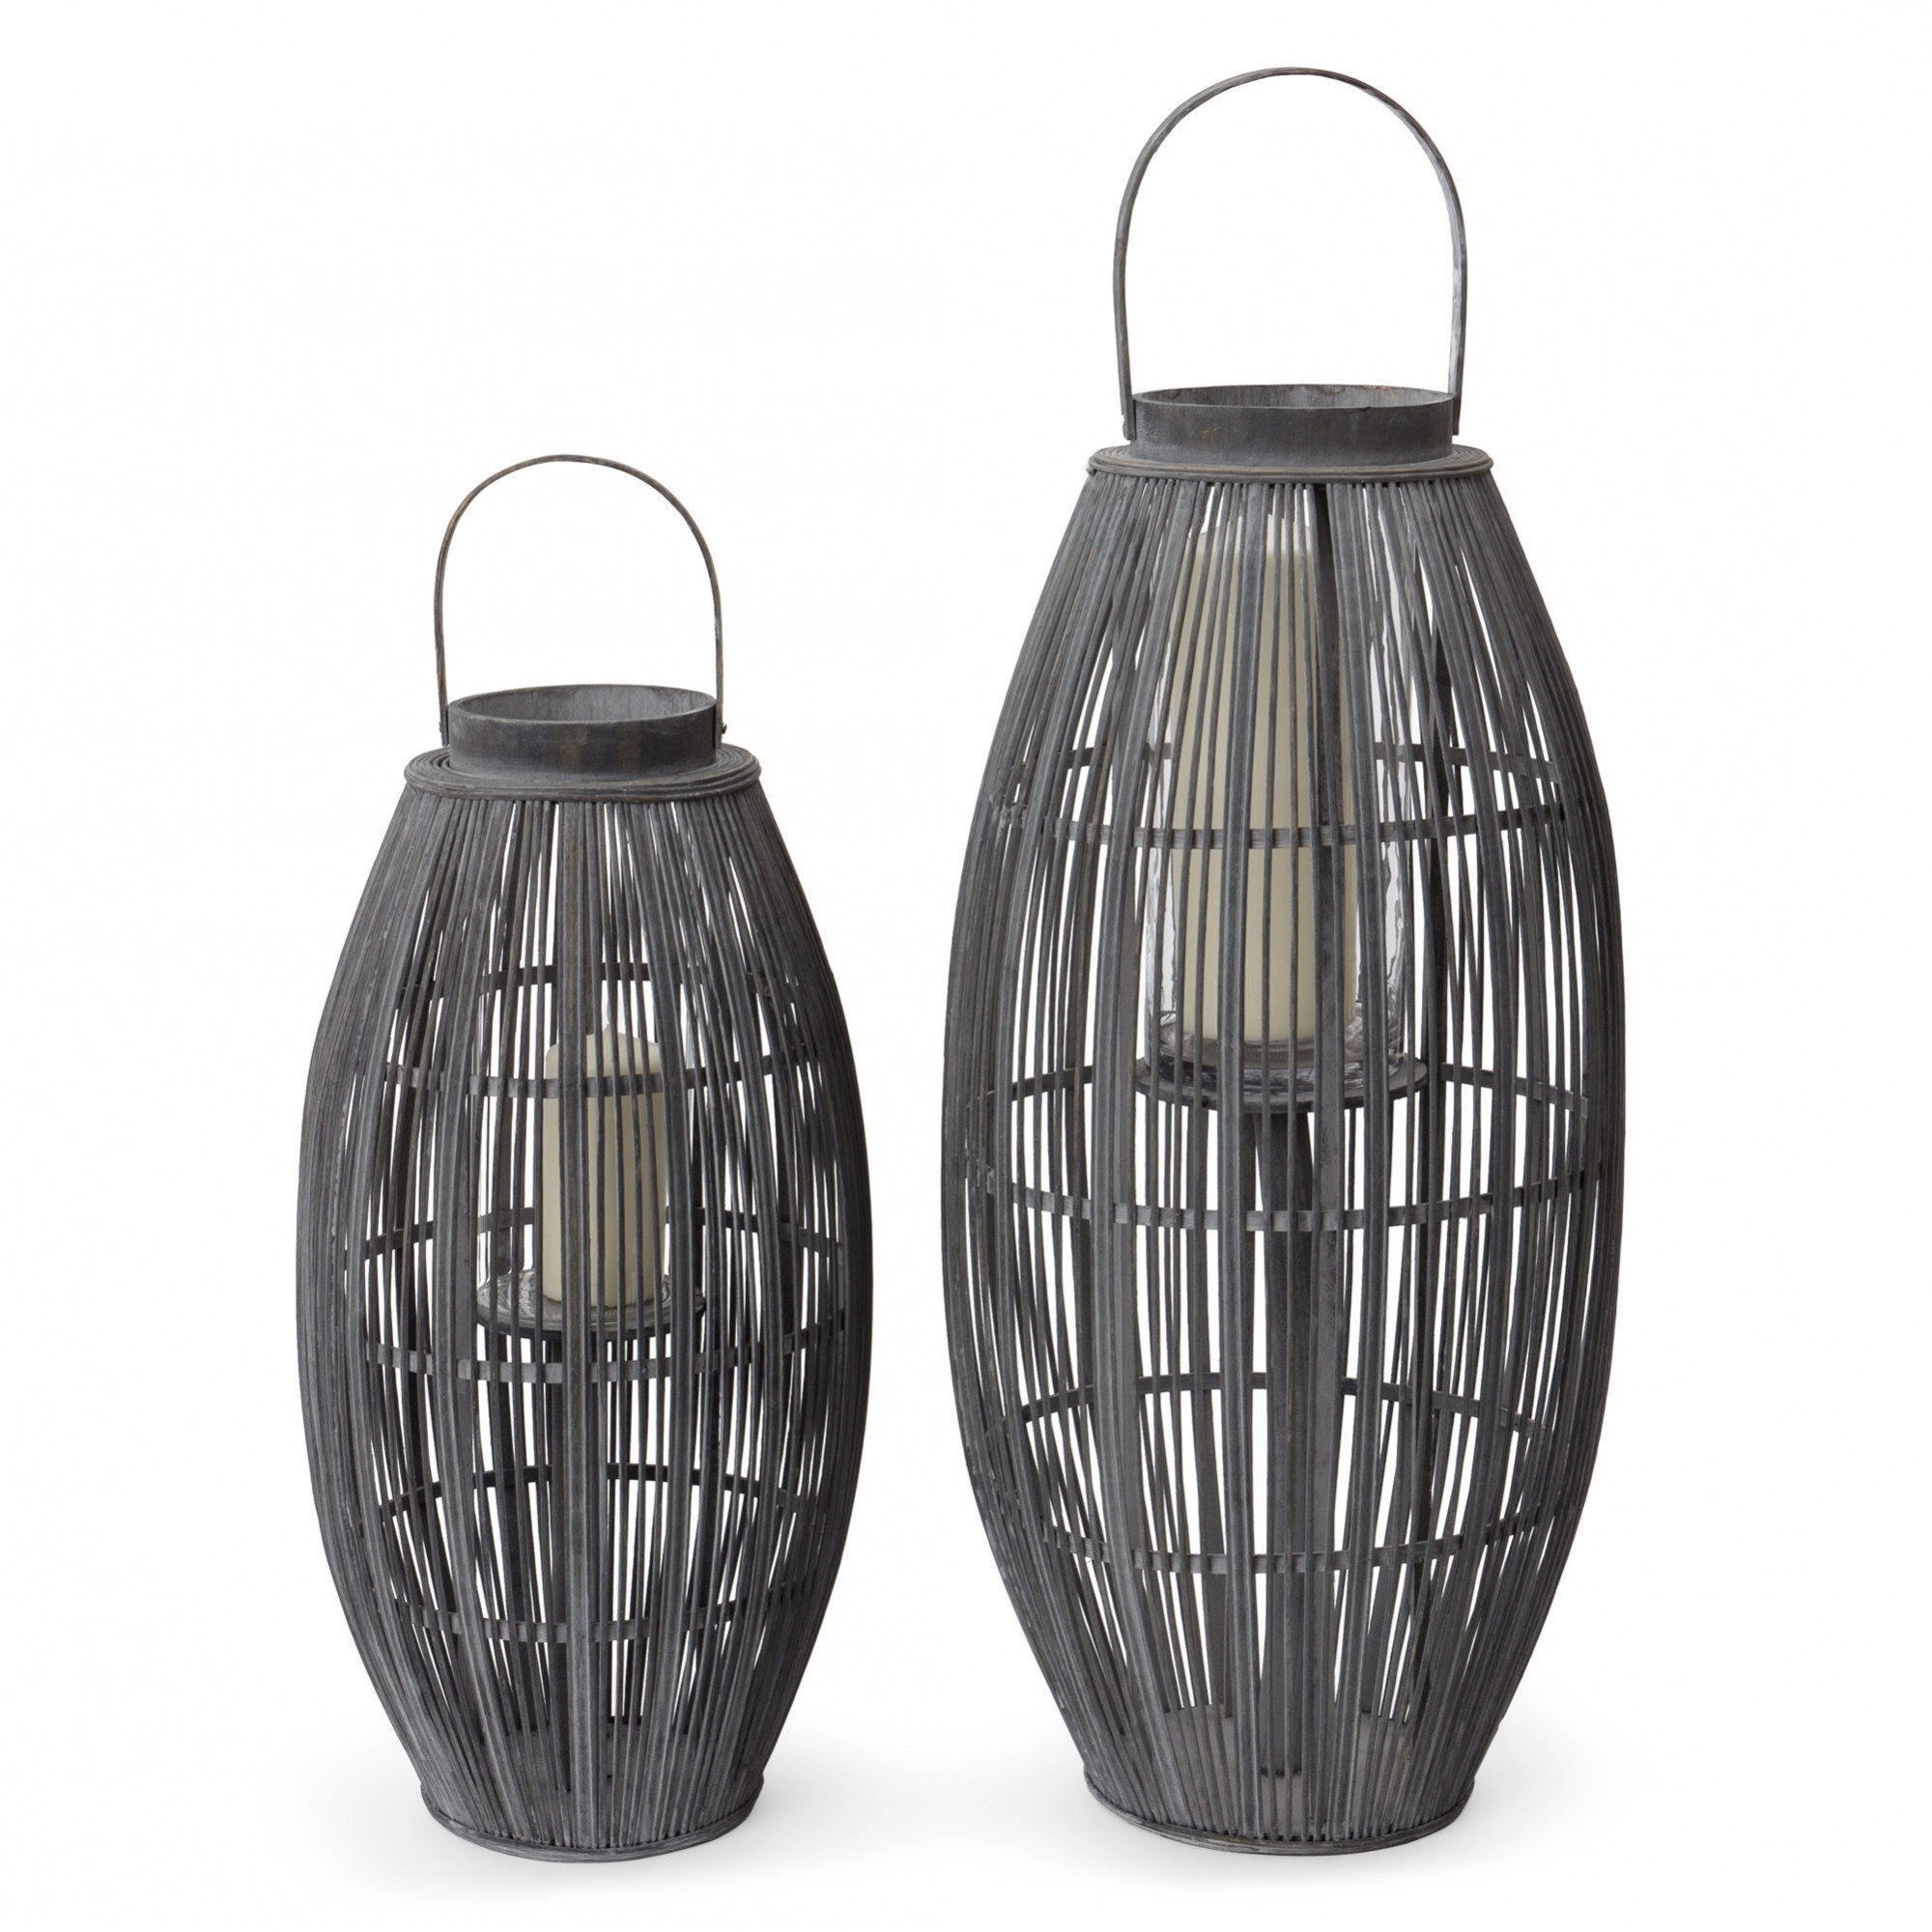 Outdoor Bamboo Lanterns